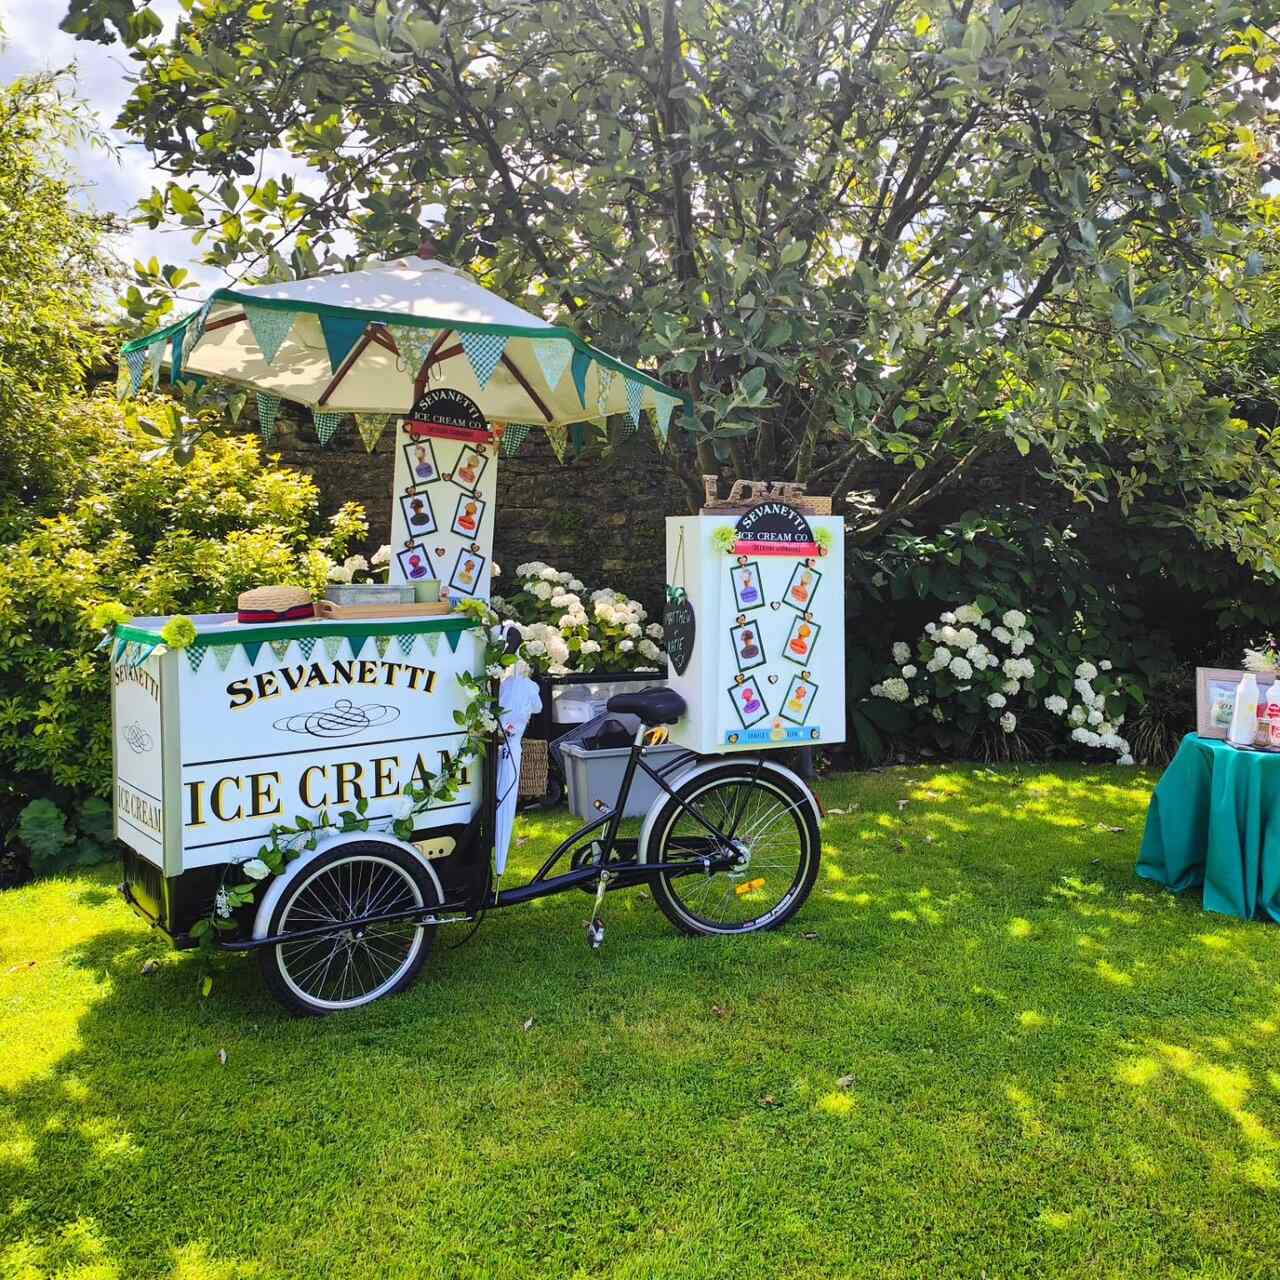 Sevanetti Ice Cream Bikes green color decoration sets